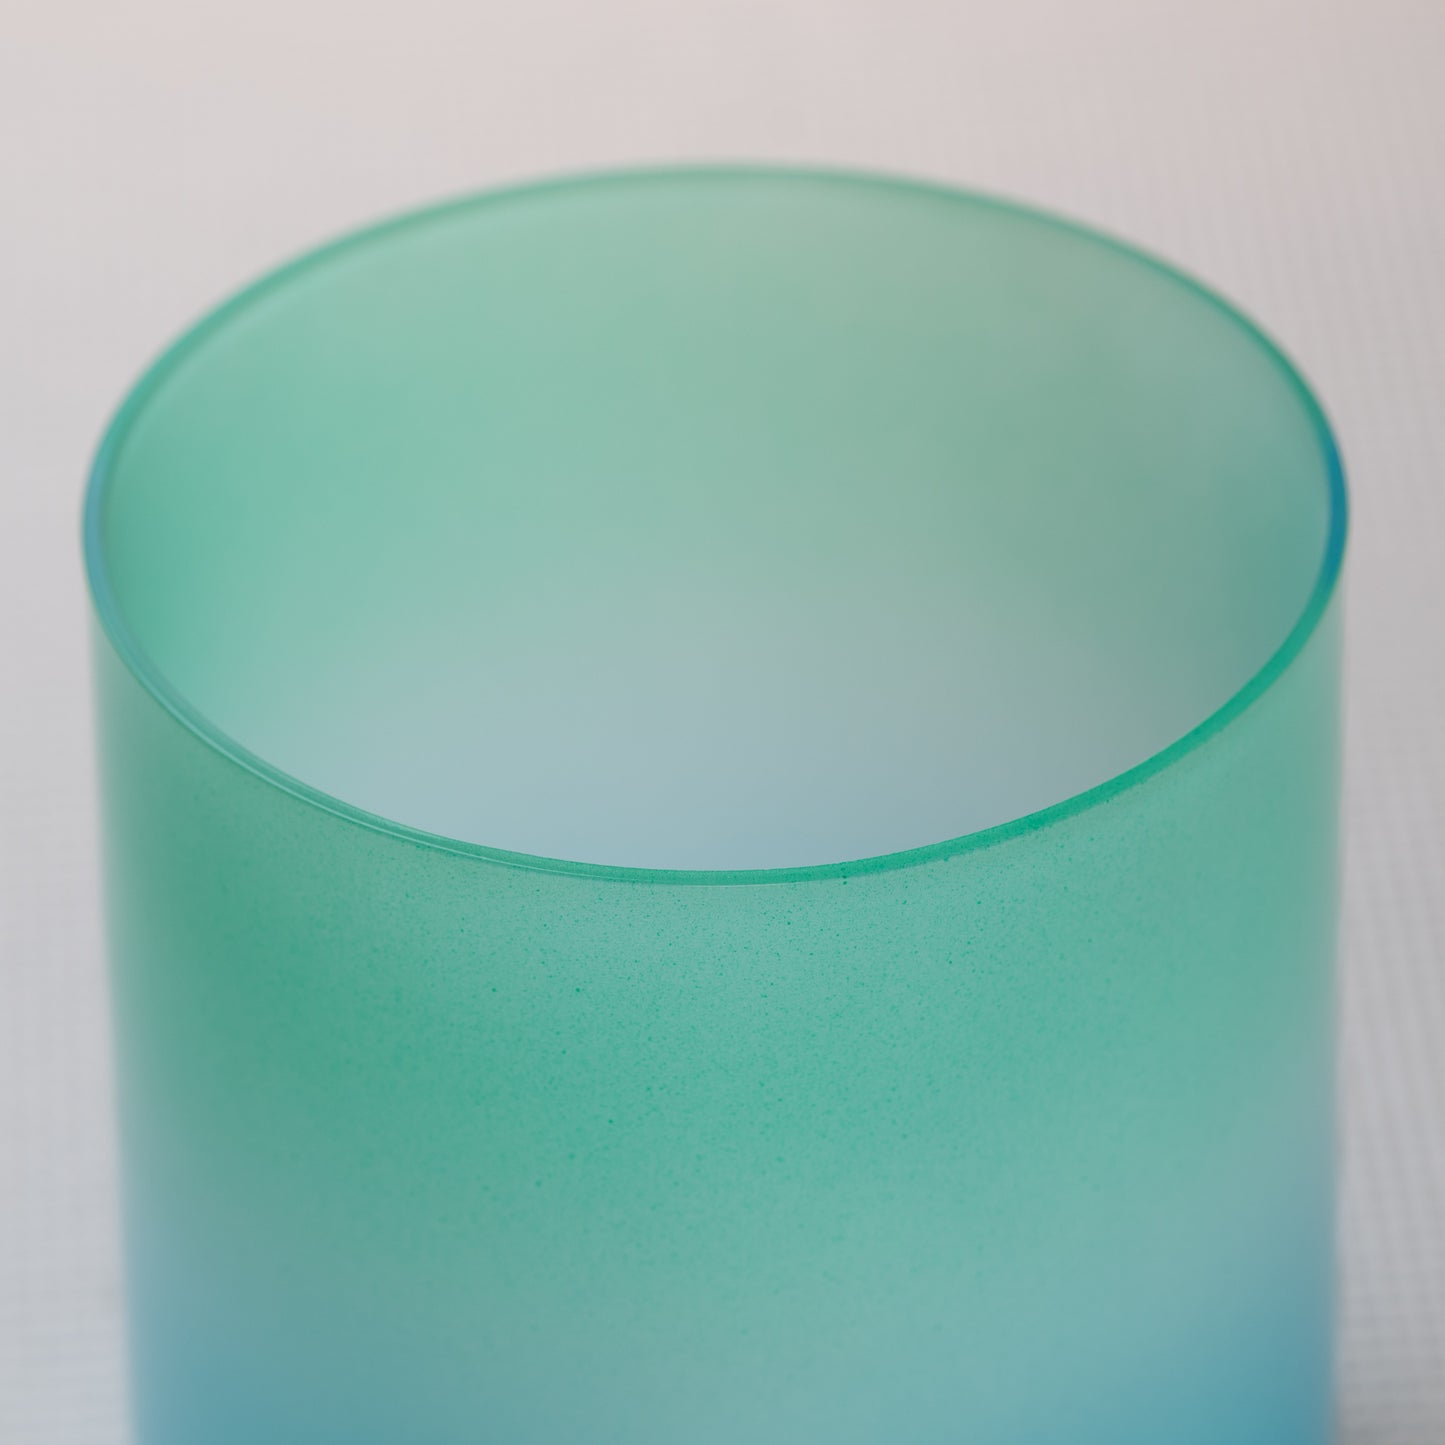 6" G-35 Blue Green Tourmaline Color Crystal Singing Bowl, Sacred Singing Bowls